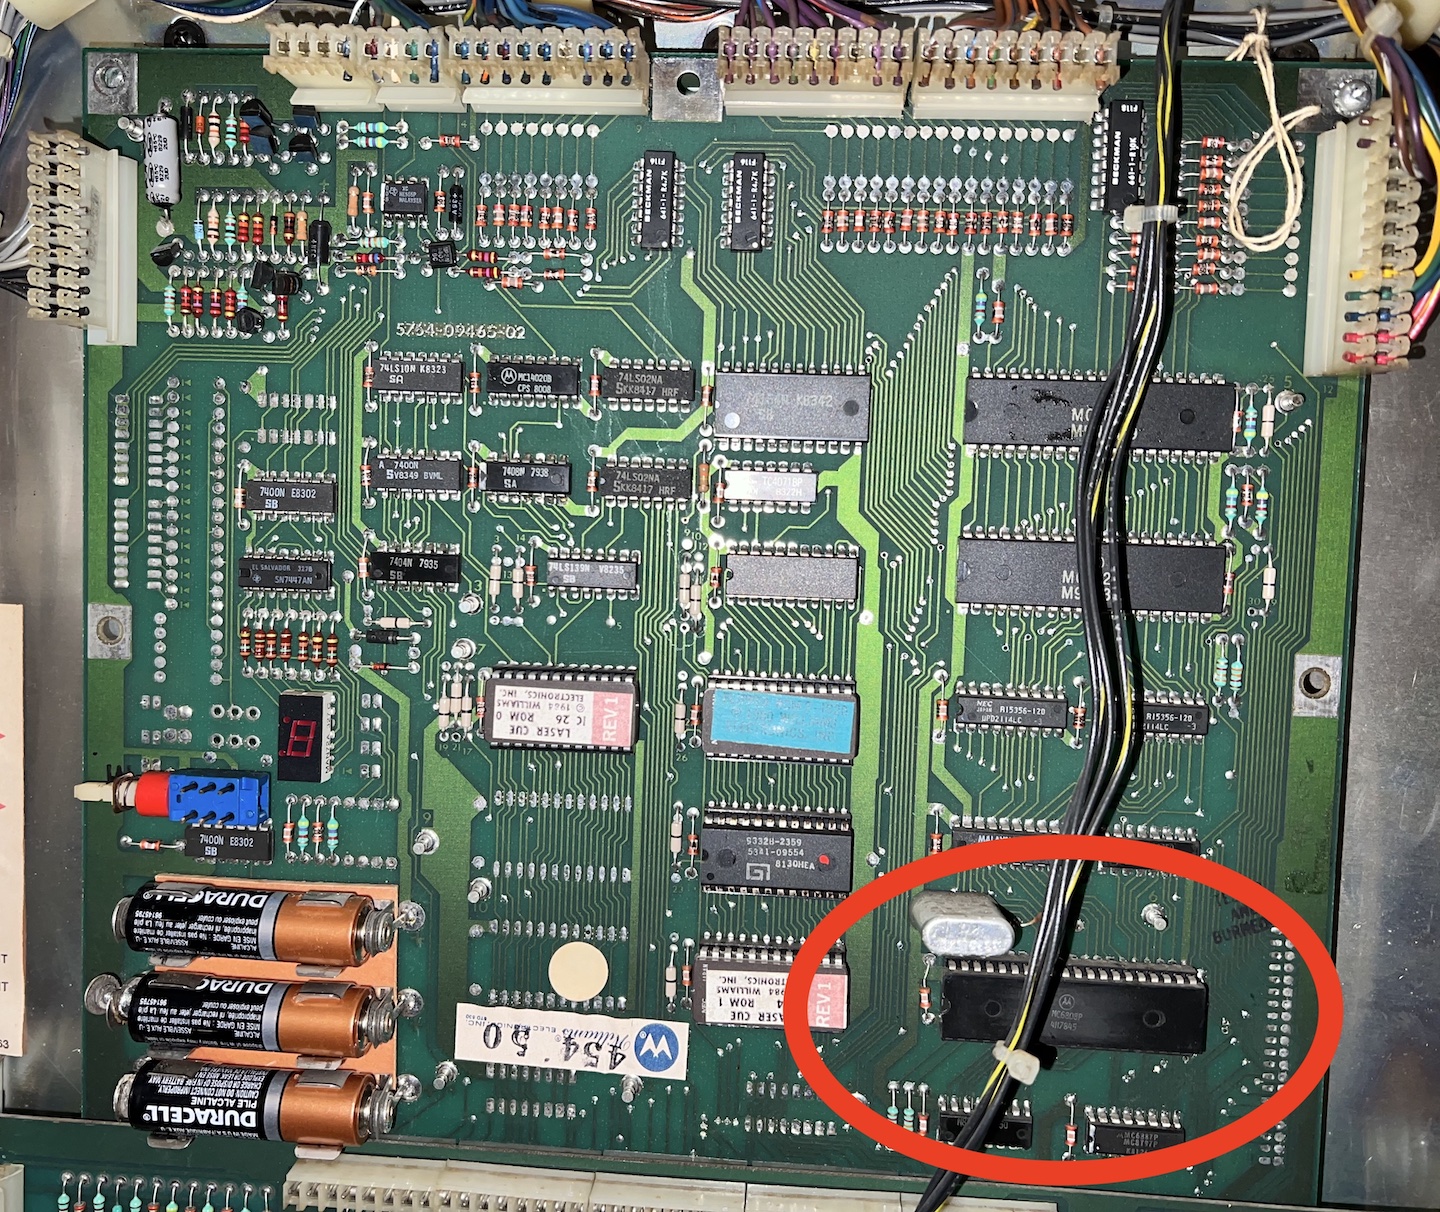 MPU board, highlighting the MC6808 microprocessor